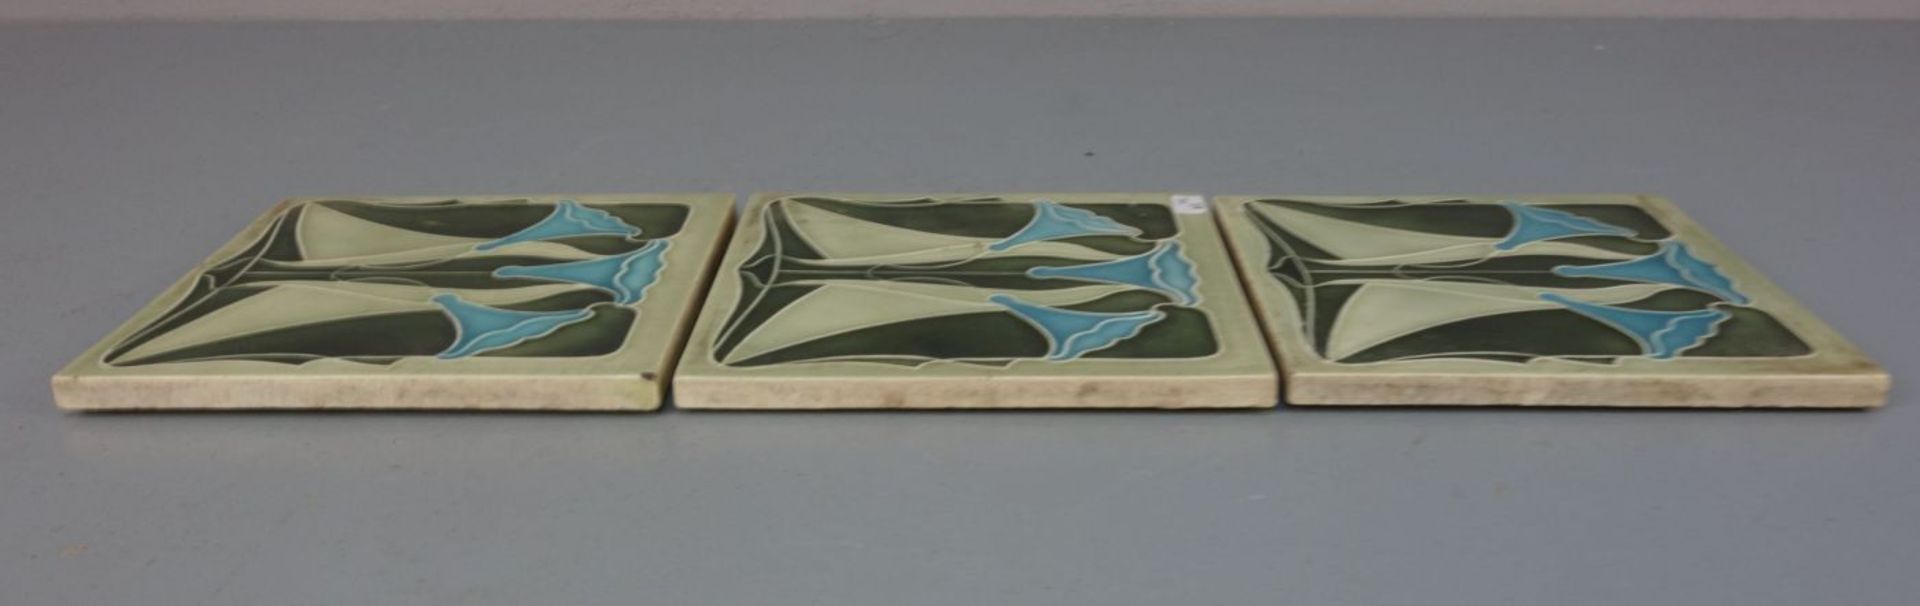 3 JUGENDSTILFLIESEN / art nouveau tiles, heller Scherben, um 1900, dreifarbig glasiert mit - Bild 4 aus 7